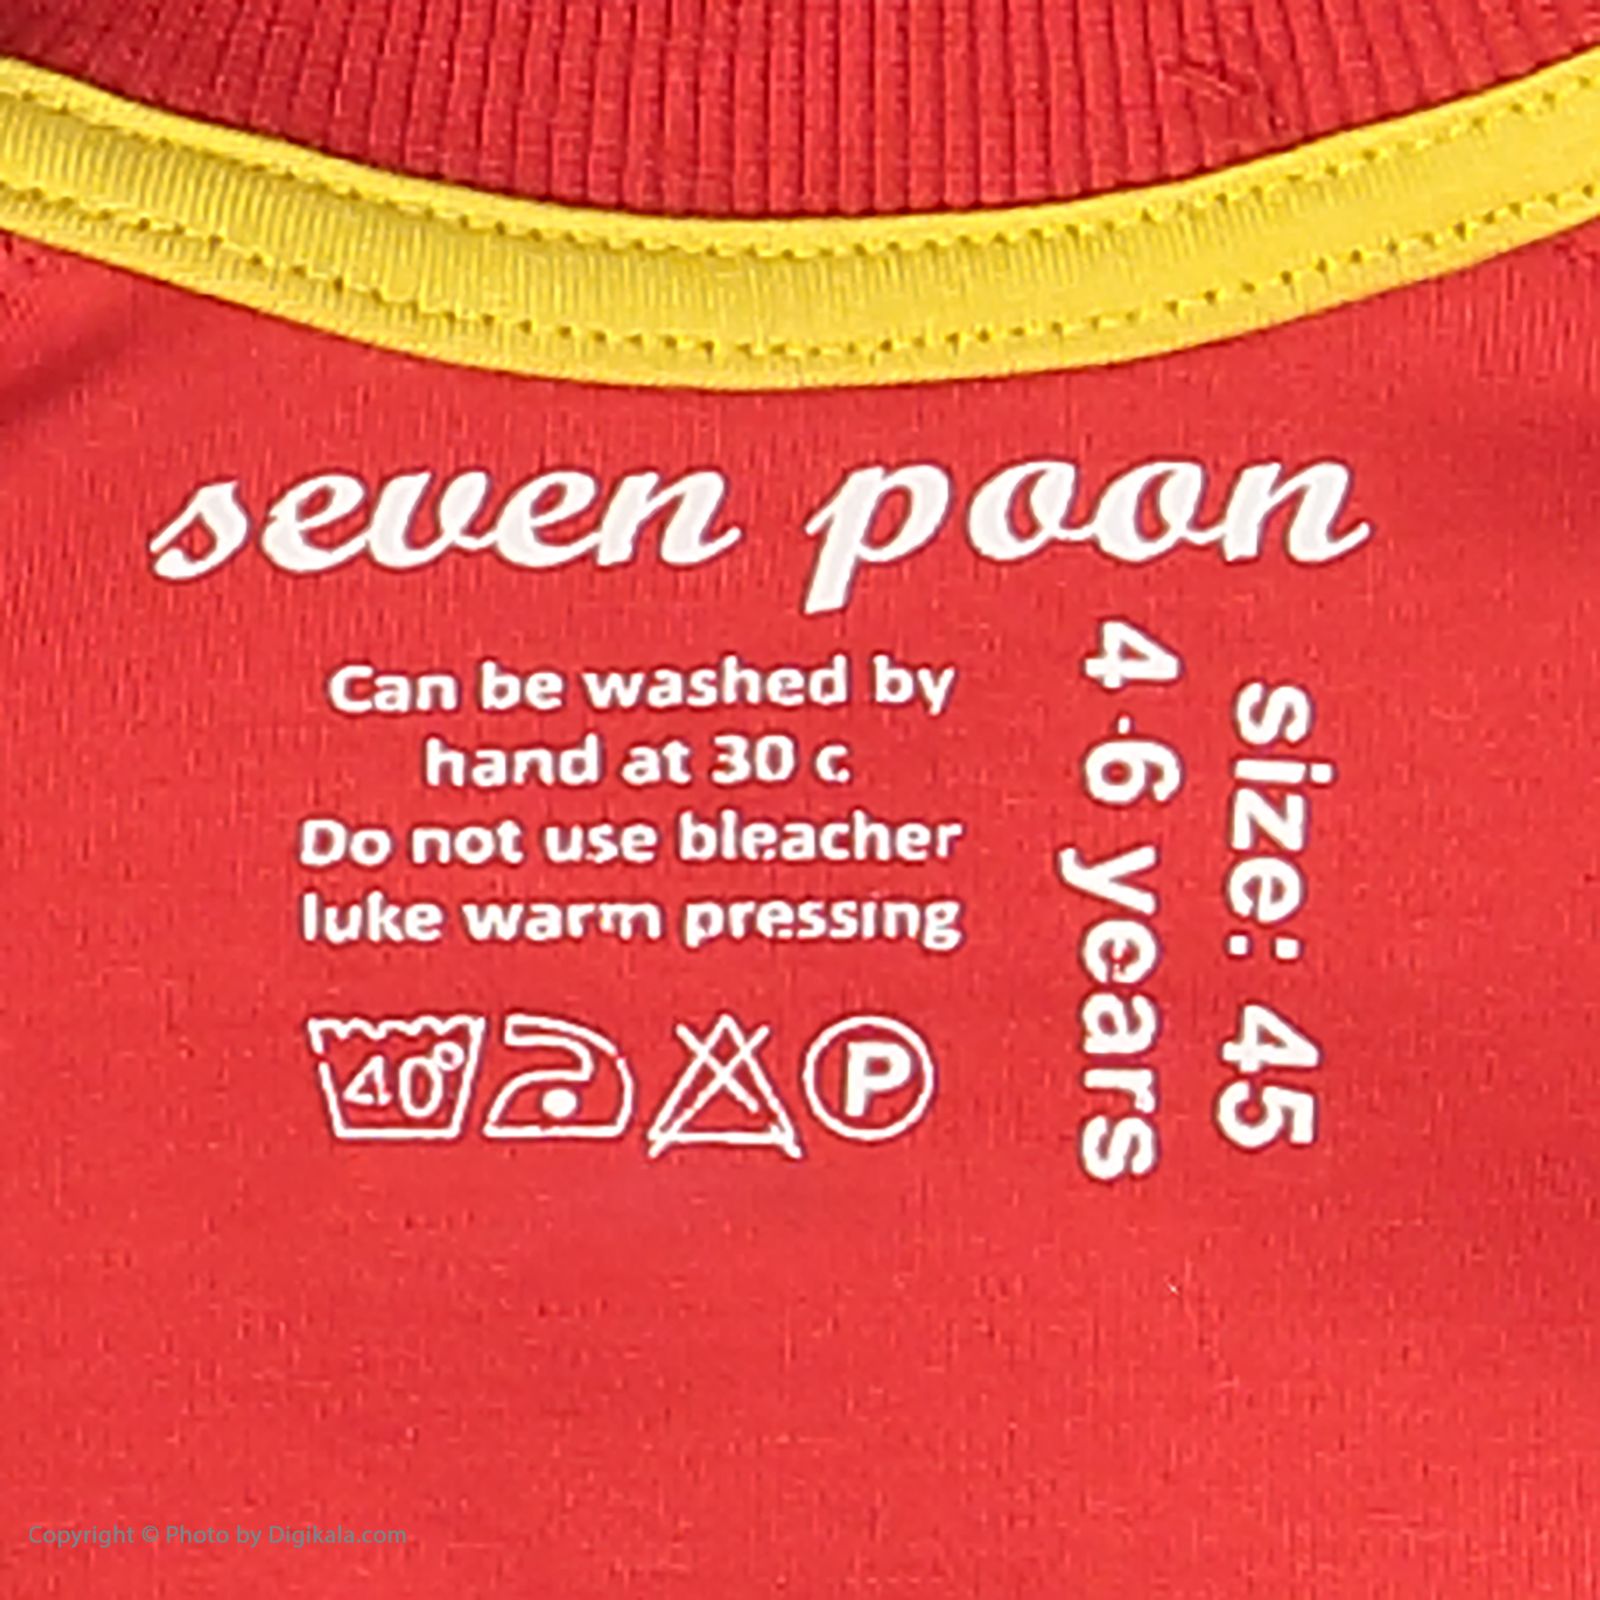 تی شرت پسرانه سون پون مدل 1391238-72 -  - 5